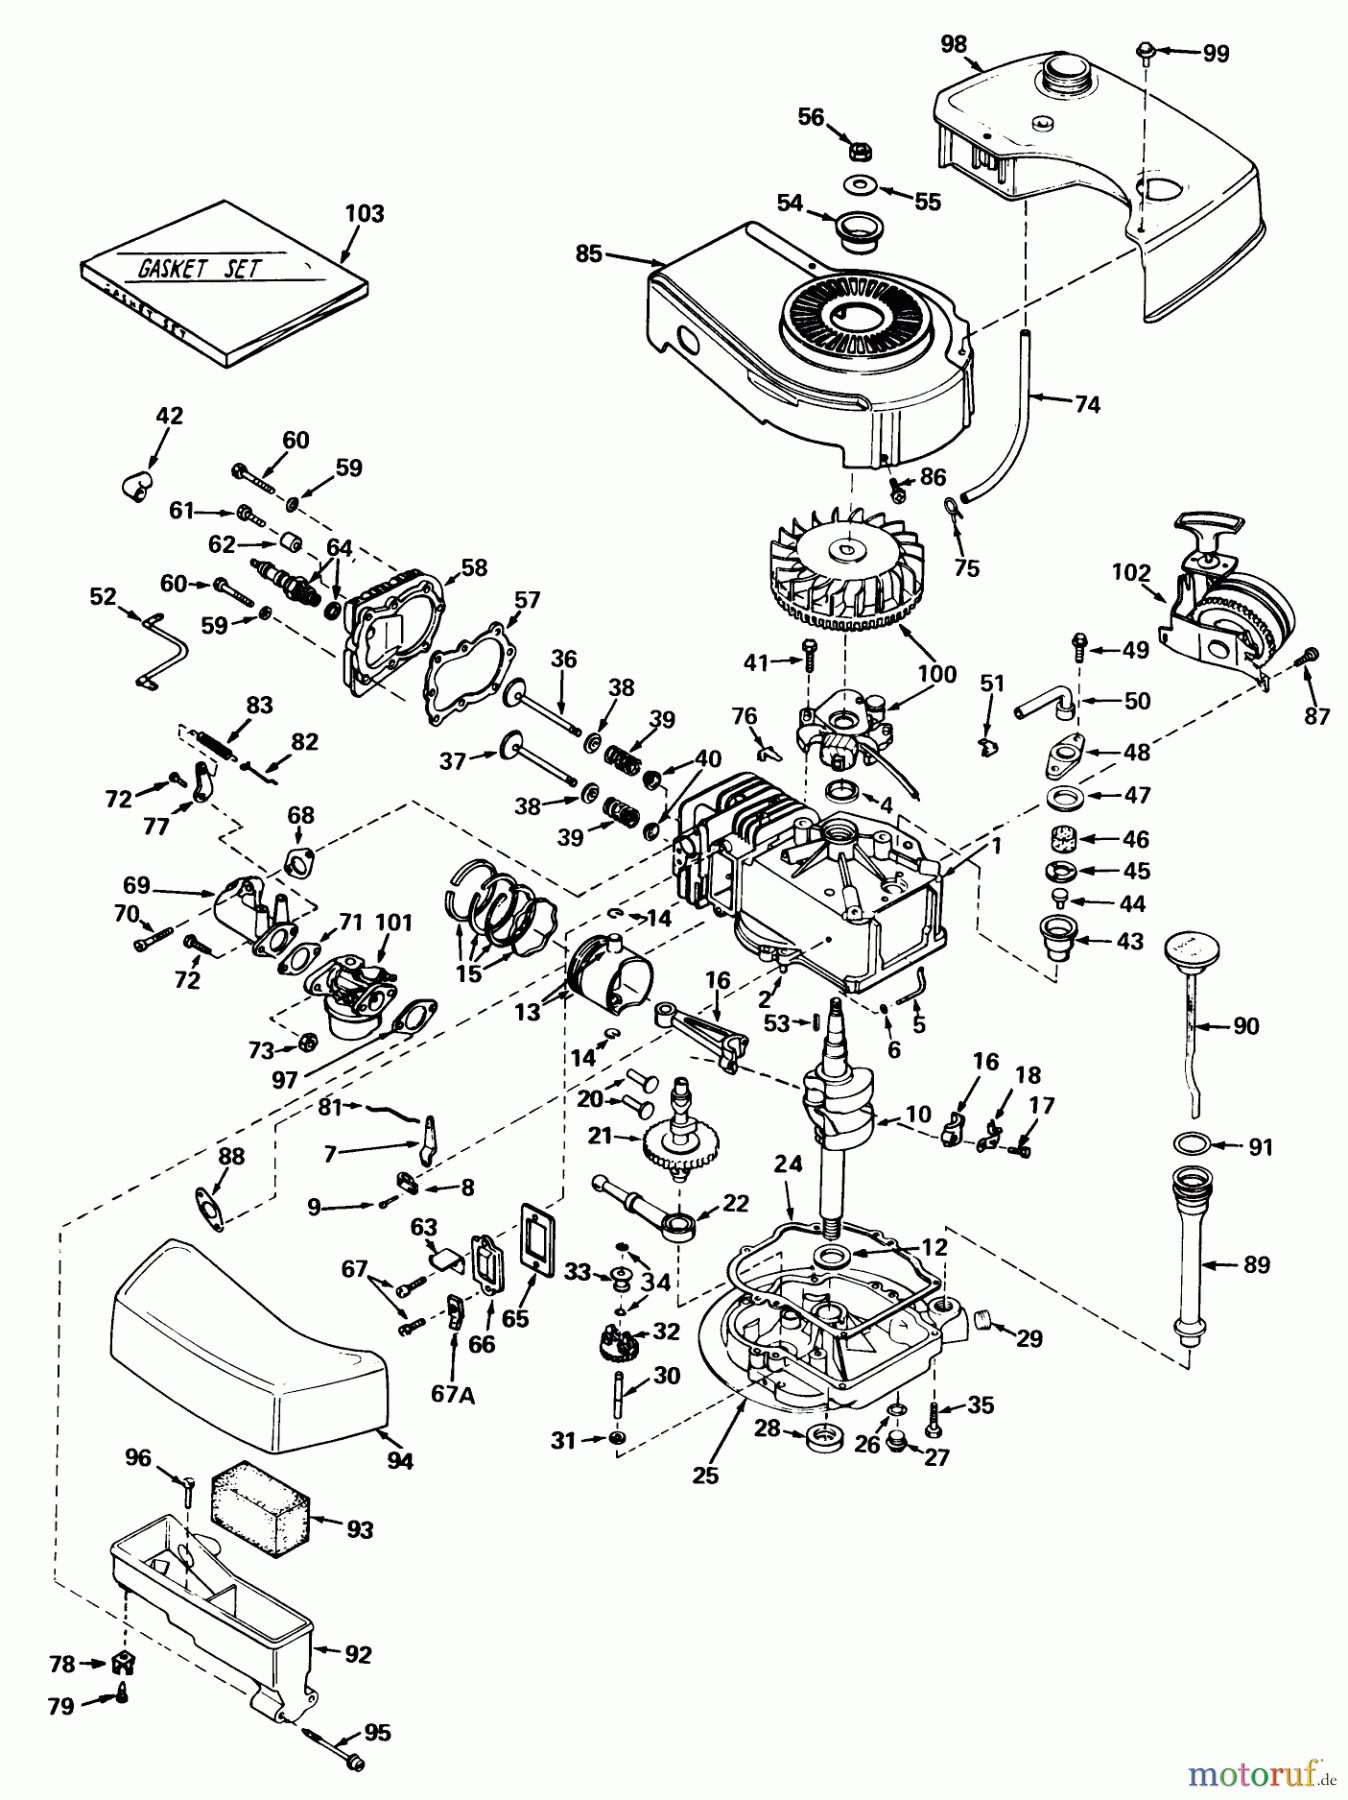  Toro Neu Mowers, Walk-Behind Seite 1 20440 - Toro Lawnmower, 1975 (5000001-5999999) ENGINE TECUMSEH MODEL NO. TNT 120-12002